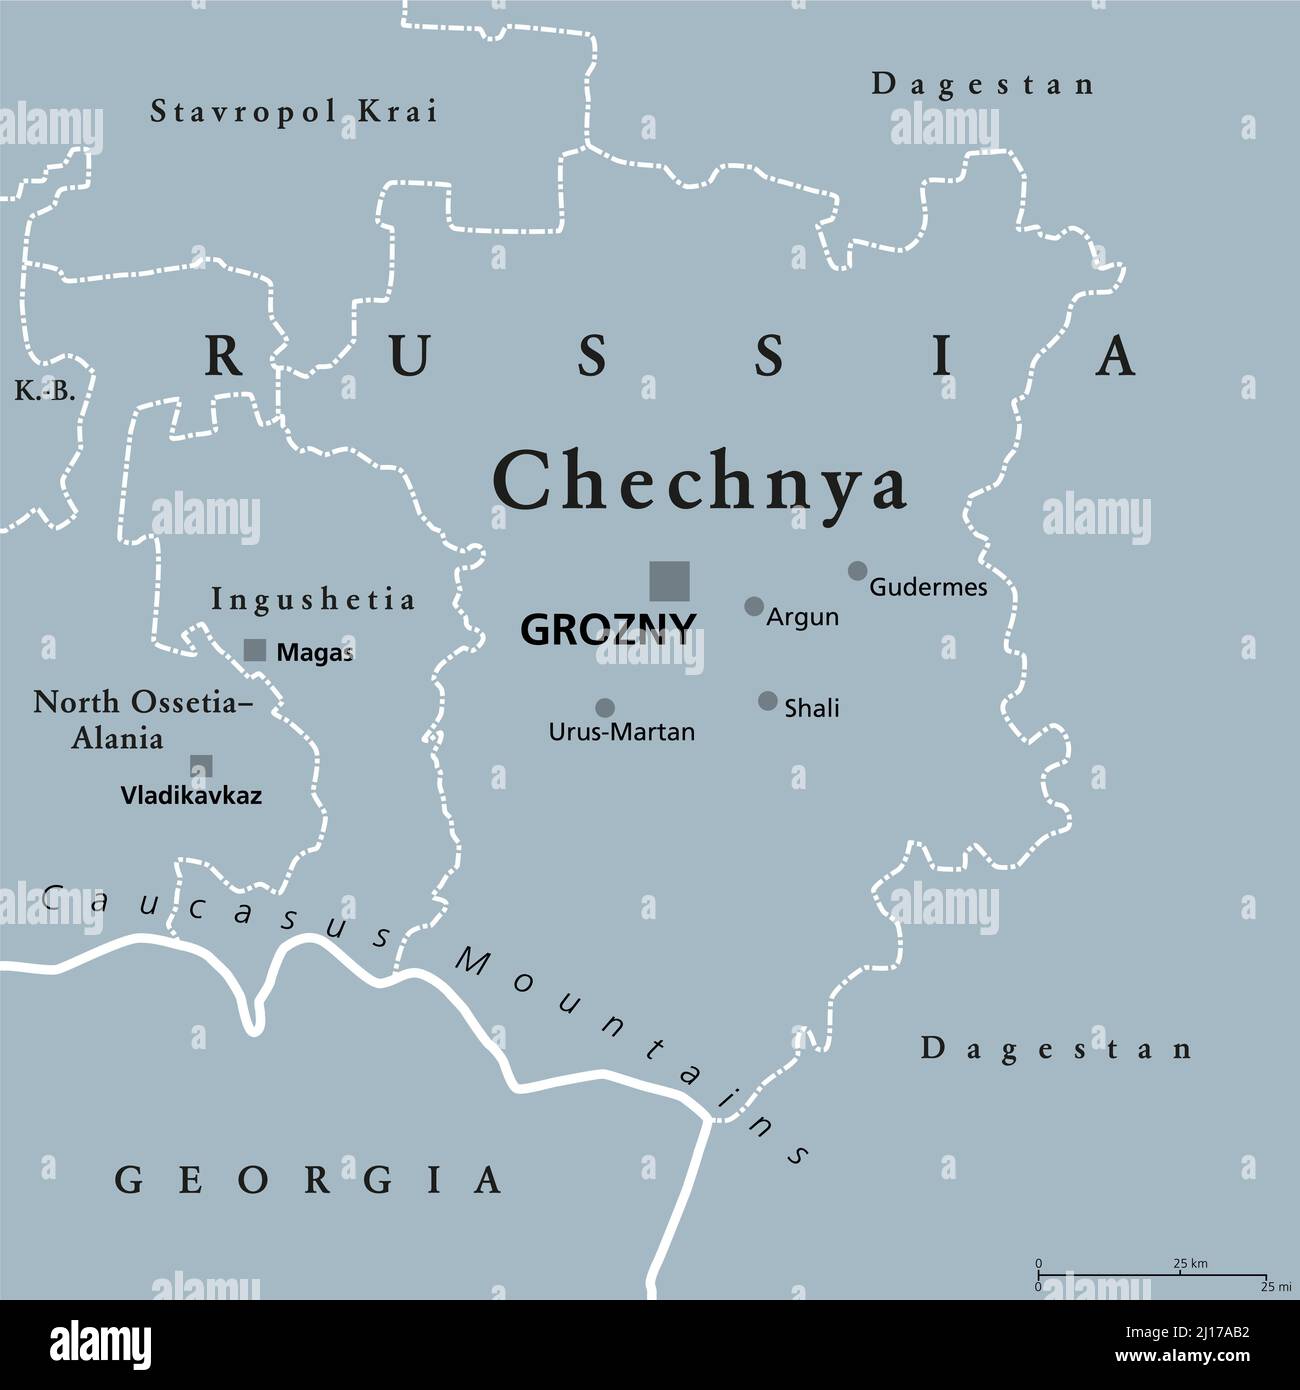 Tschetschenien, graue politische Landkarte mit der Hauptstadt Grosny und den Grenzen. Tschetschenische Republik, eine republik Russland und ein Teil des Nordkaukasus-Bundesbezirks. Stockfoto